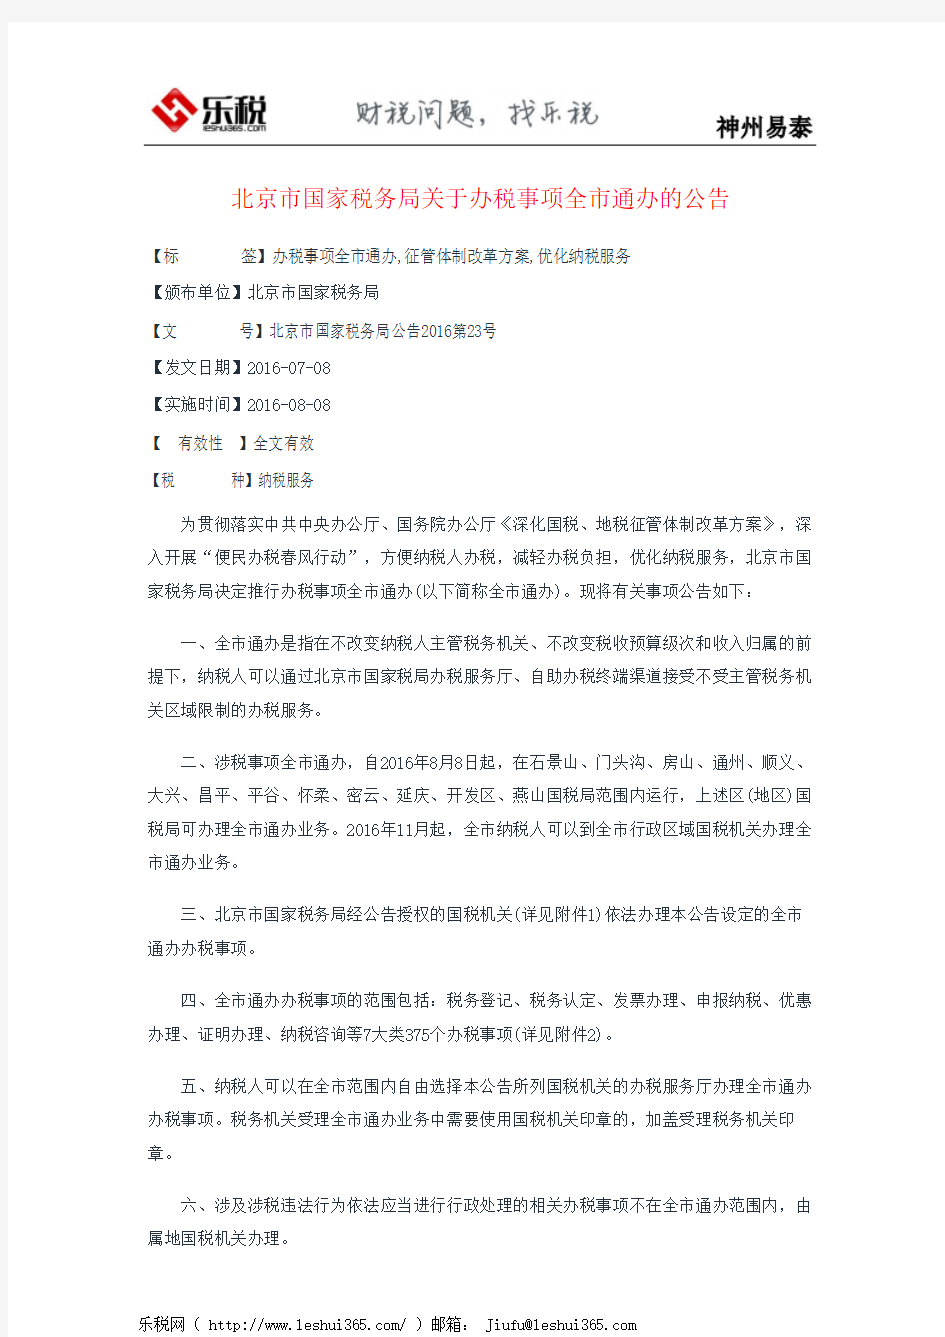 北京市国家税务局关于办税事项全市通办的公告